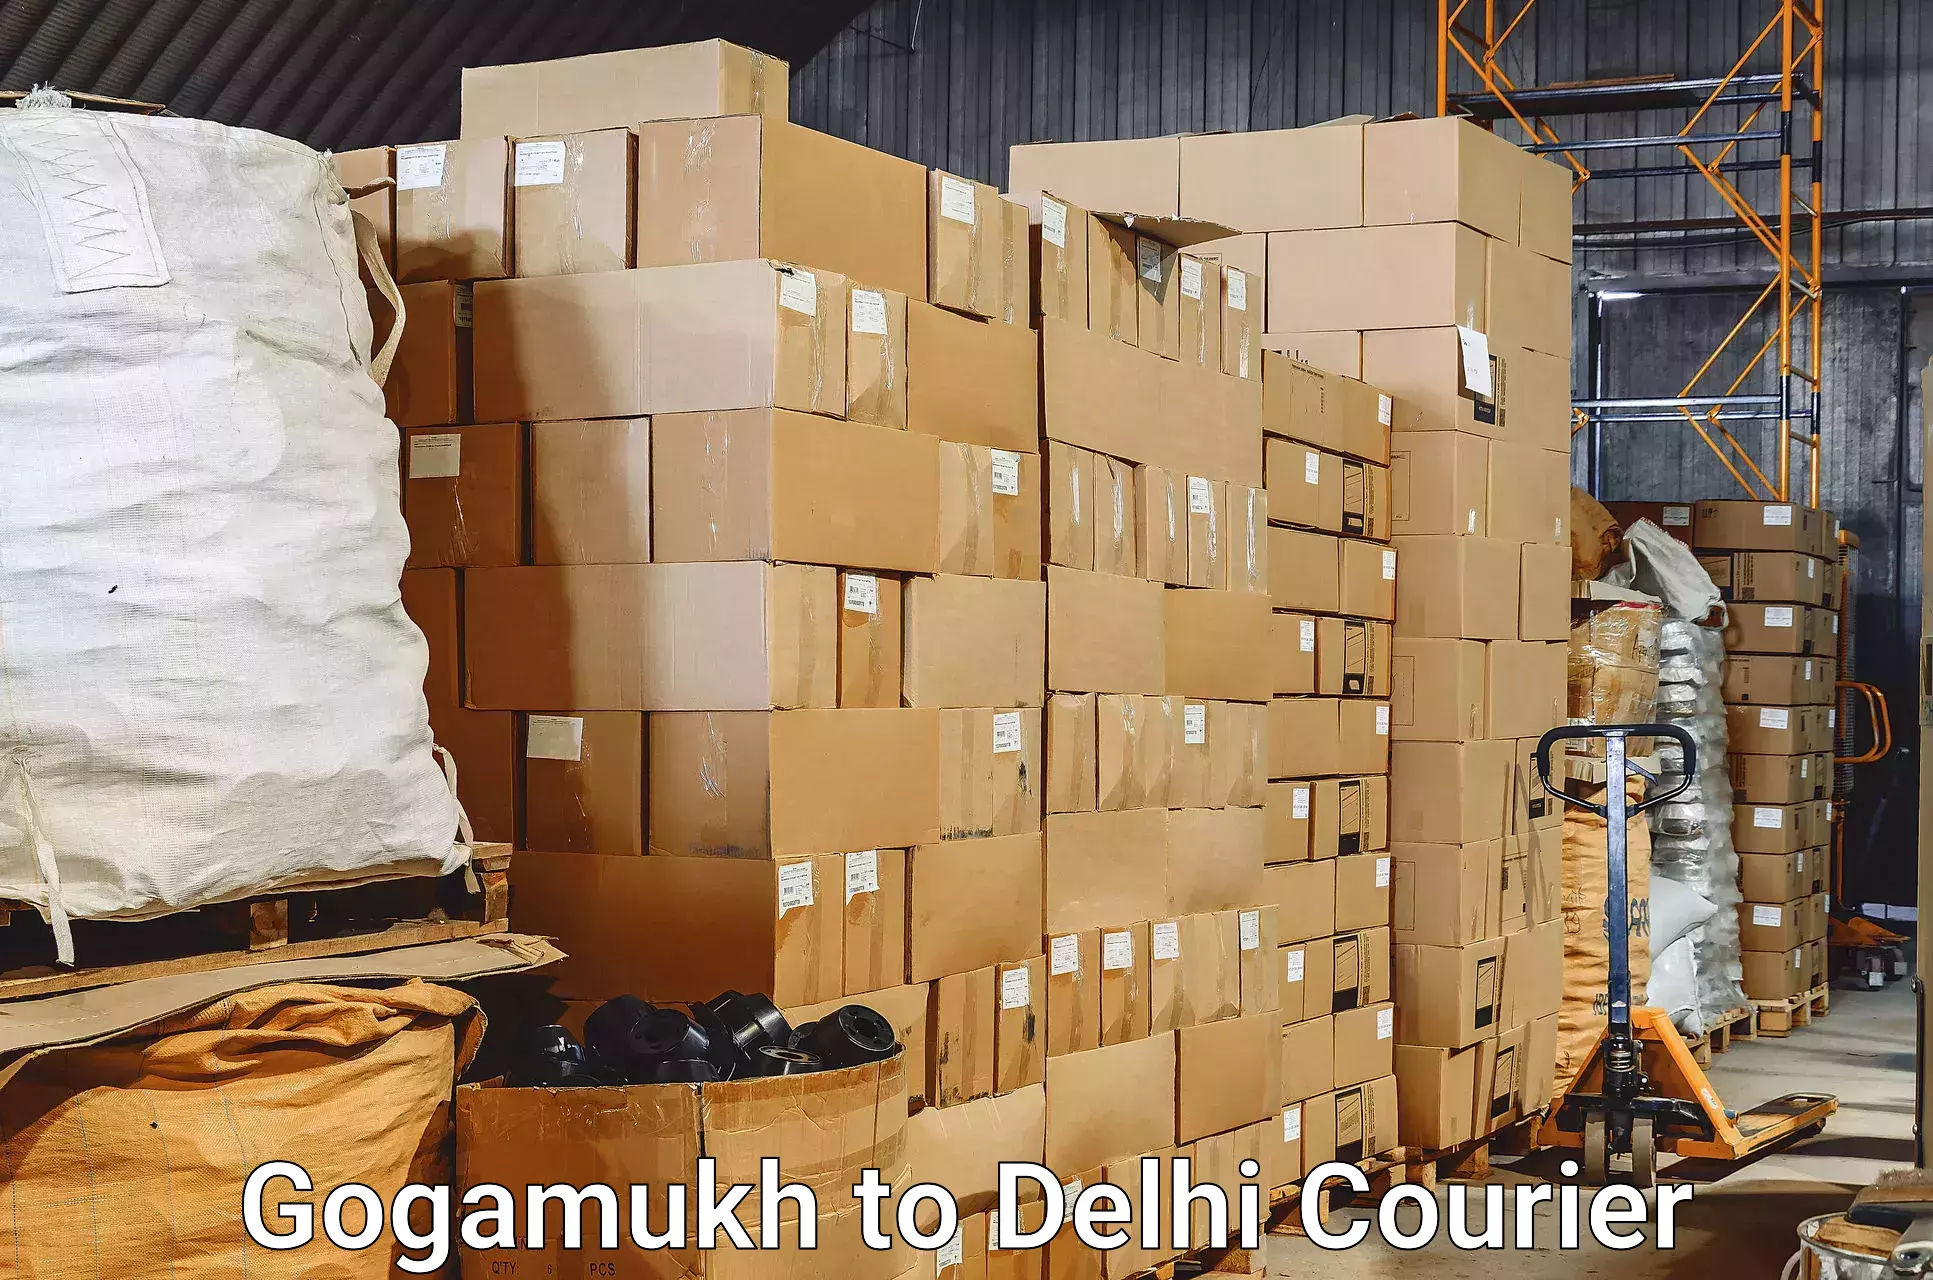 Luggage shipment strategy Gogamukh to Naraina Industrial Estate